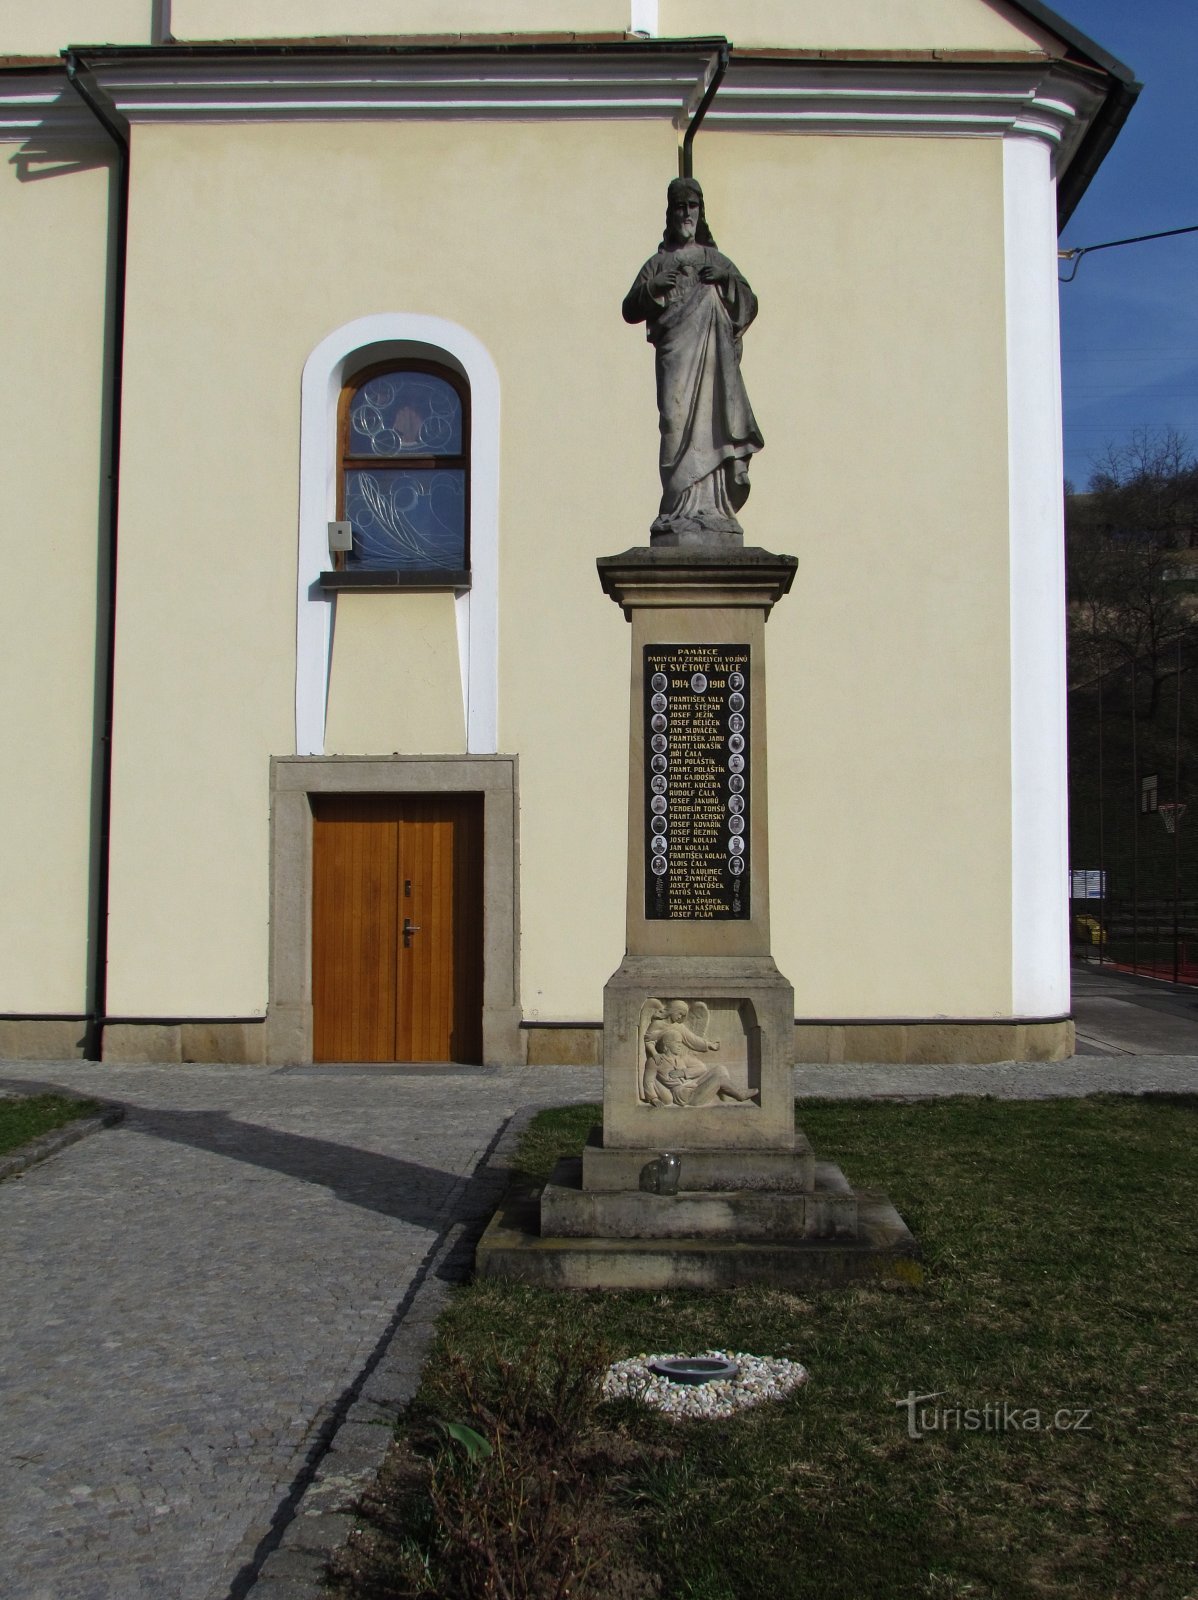 Le Christ et le monument à ceux qui sont morts pendant la Première Guerre mondiale